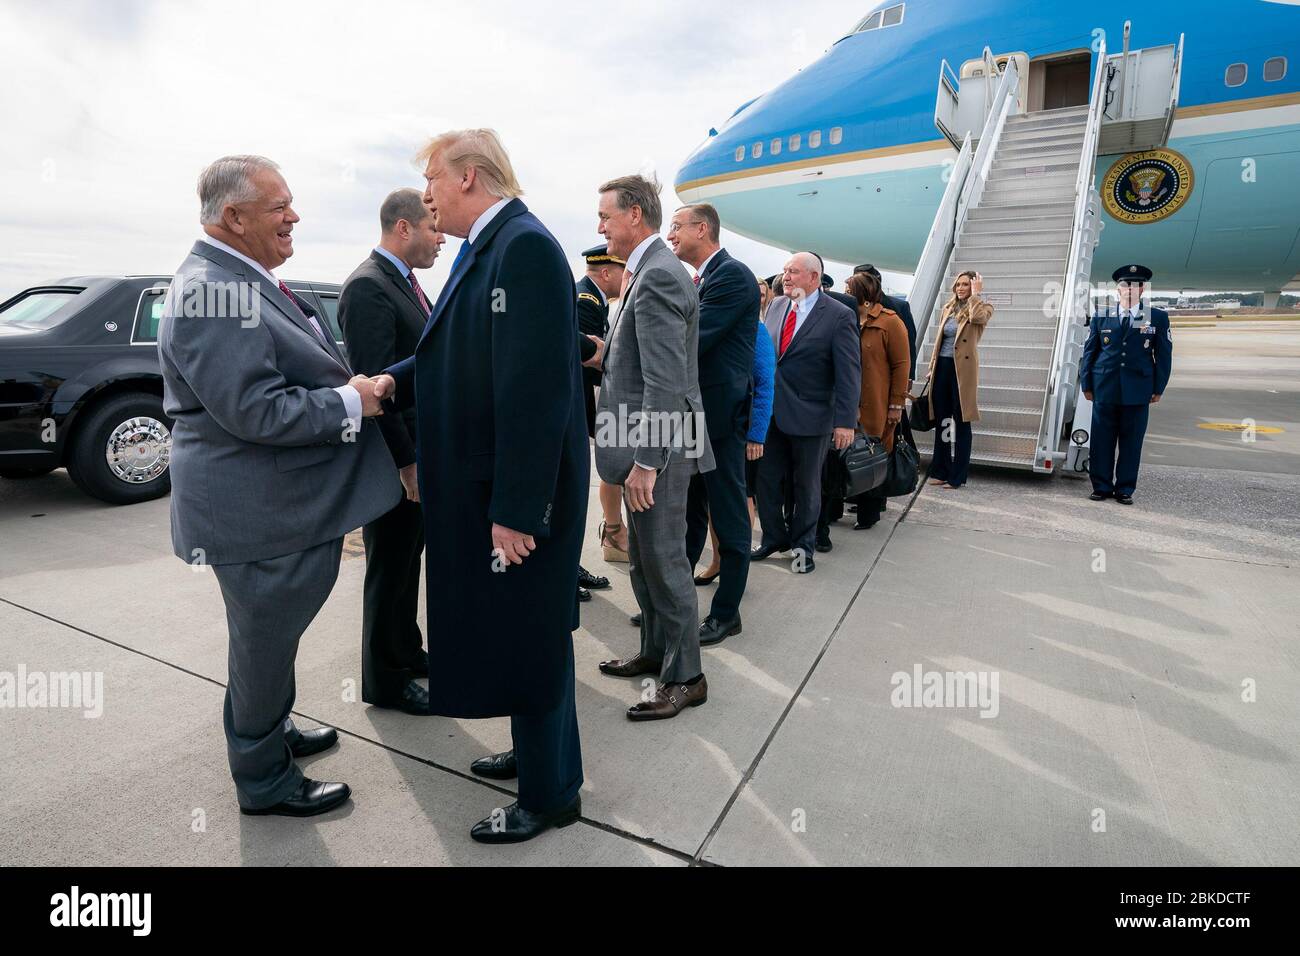 Präsident Donald J. Trump wird von lokalen und staatlichen Beamten begrüßt, nachdem er an einem Freitag, dem 8. November 2019, auf dem Dobbins Air Reserve Base in Marietta ausstieg. Präsident Trump kommt in Georgien an Stockfoto